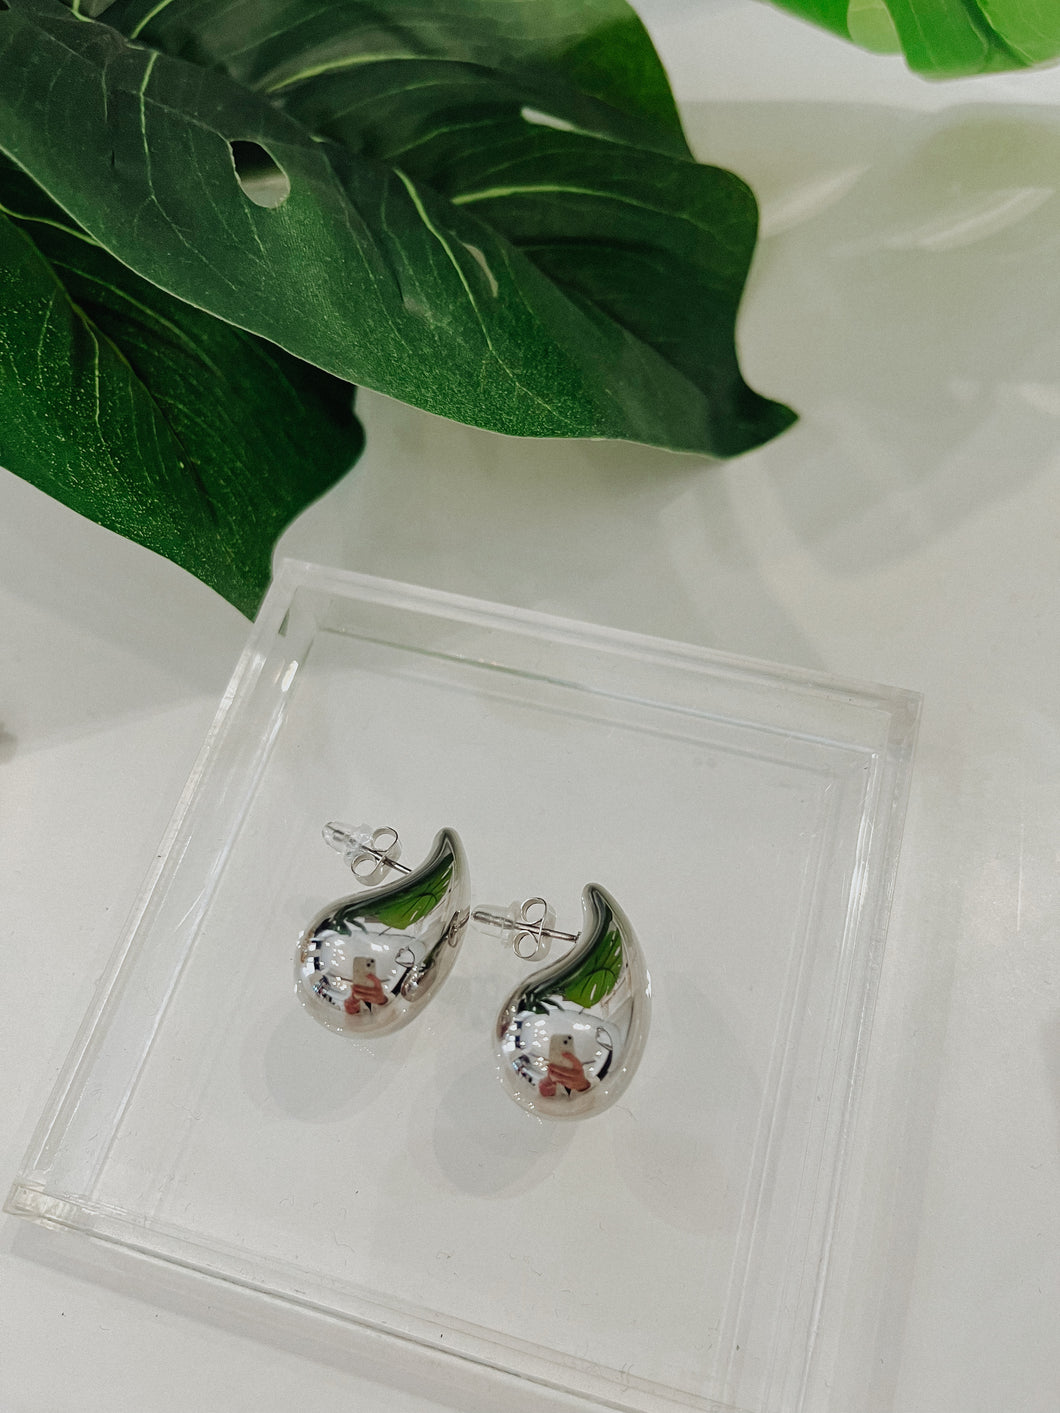 The “Mini Blair” waterdrop earrings